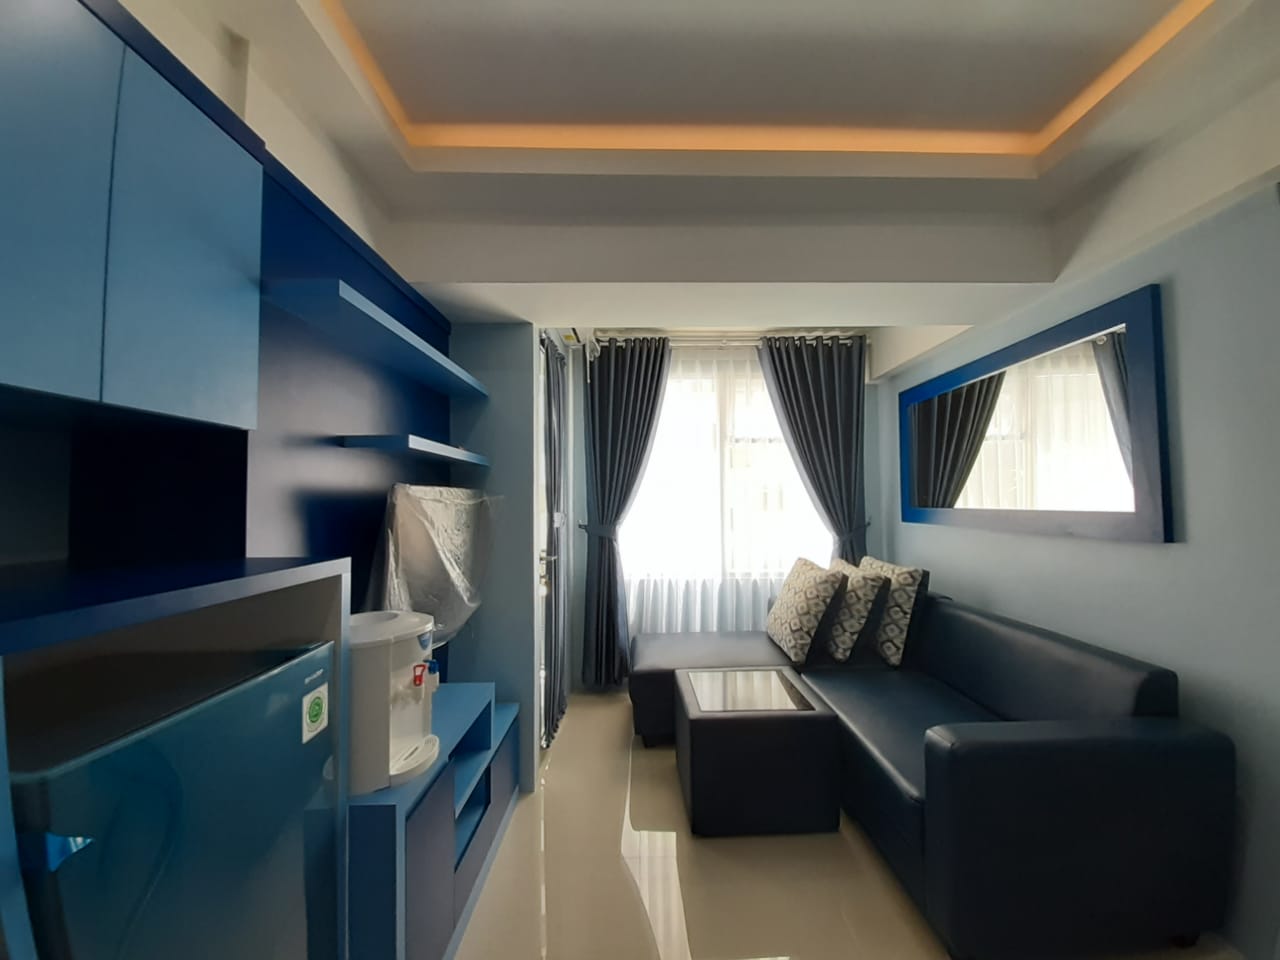 Sewa Apartemen Jarrdin Harian - Homecare24